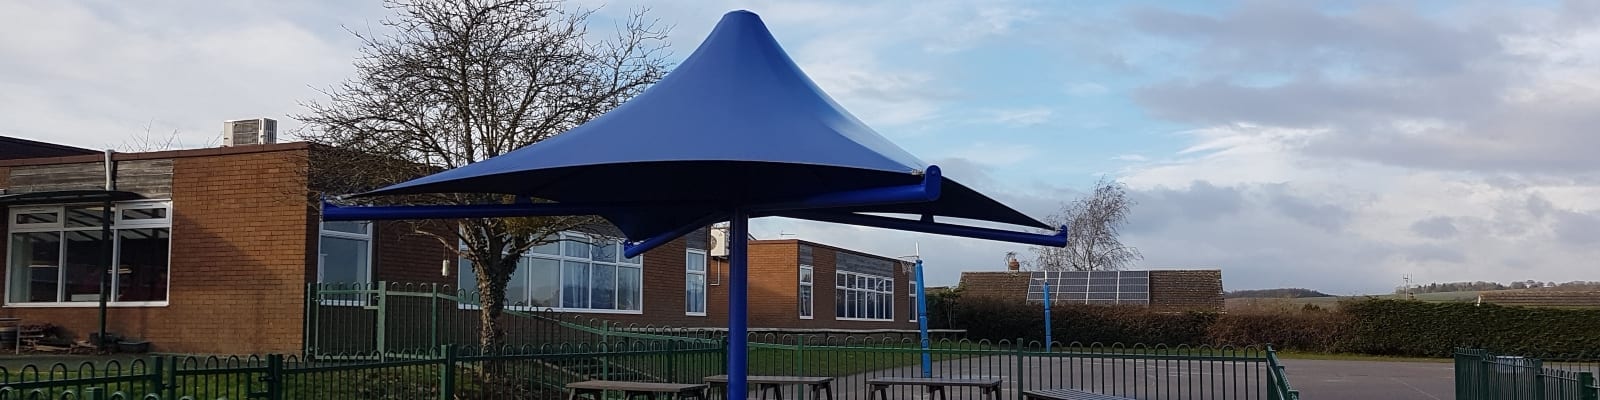 Ludlow Junior School Umbrella Canopy